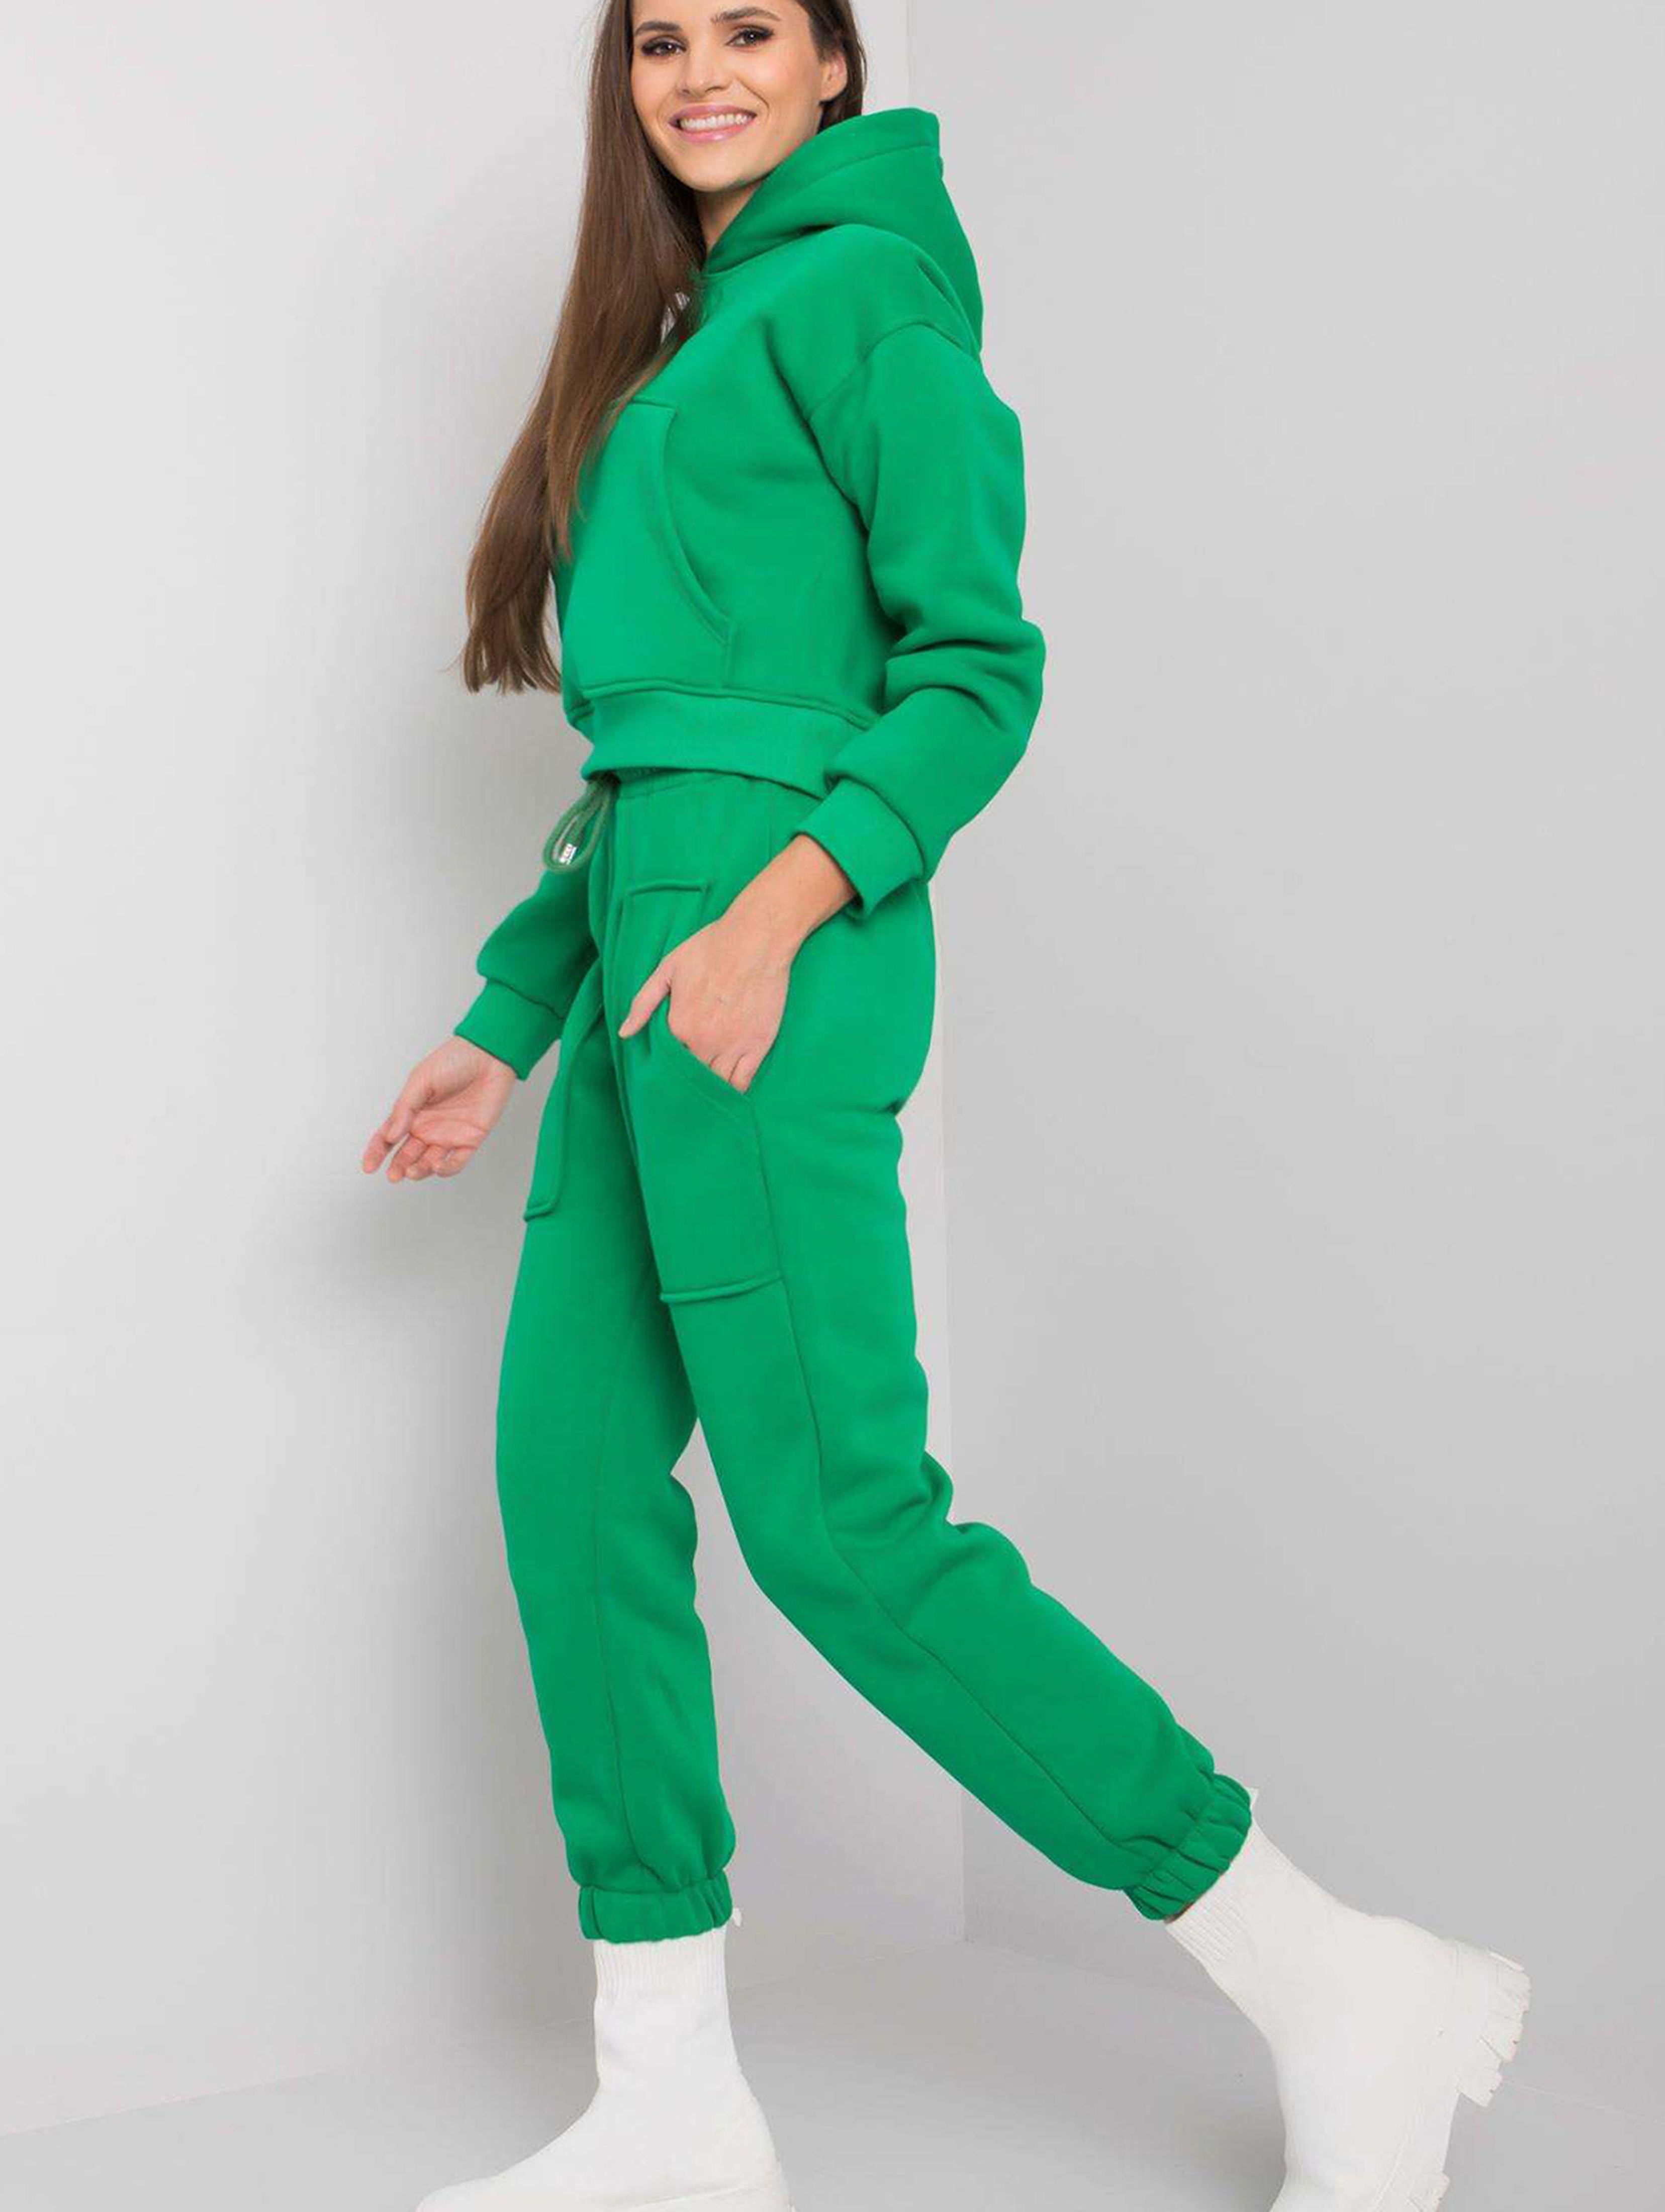 Zielony komplet dresowy bawełniany Solange